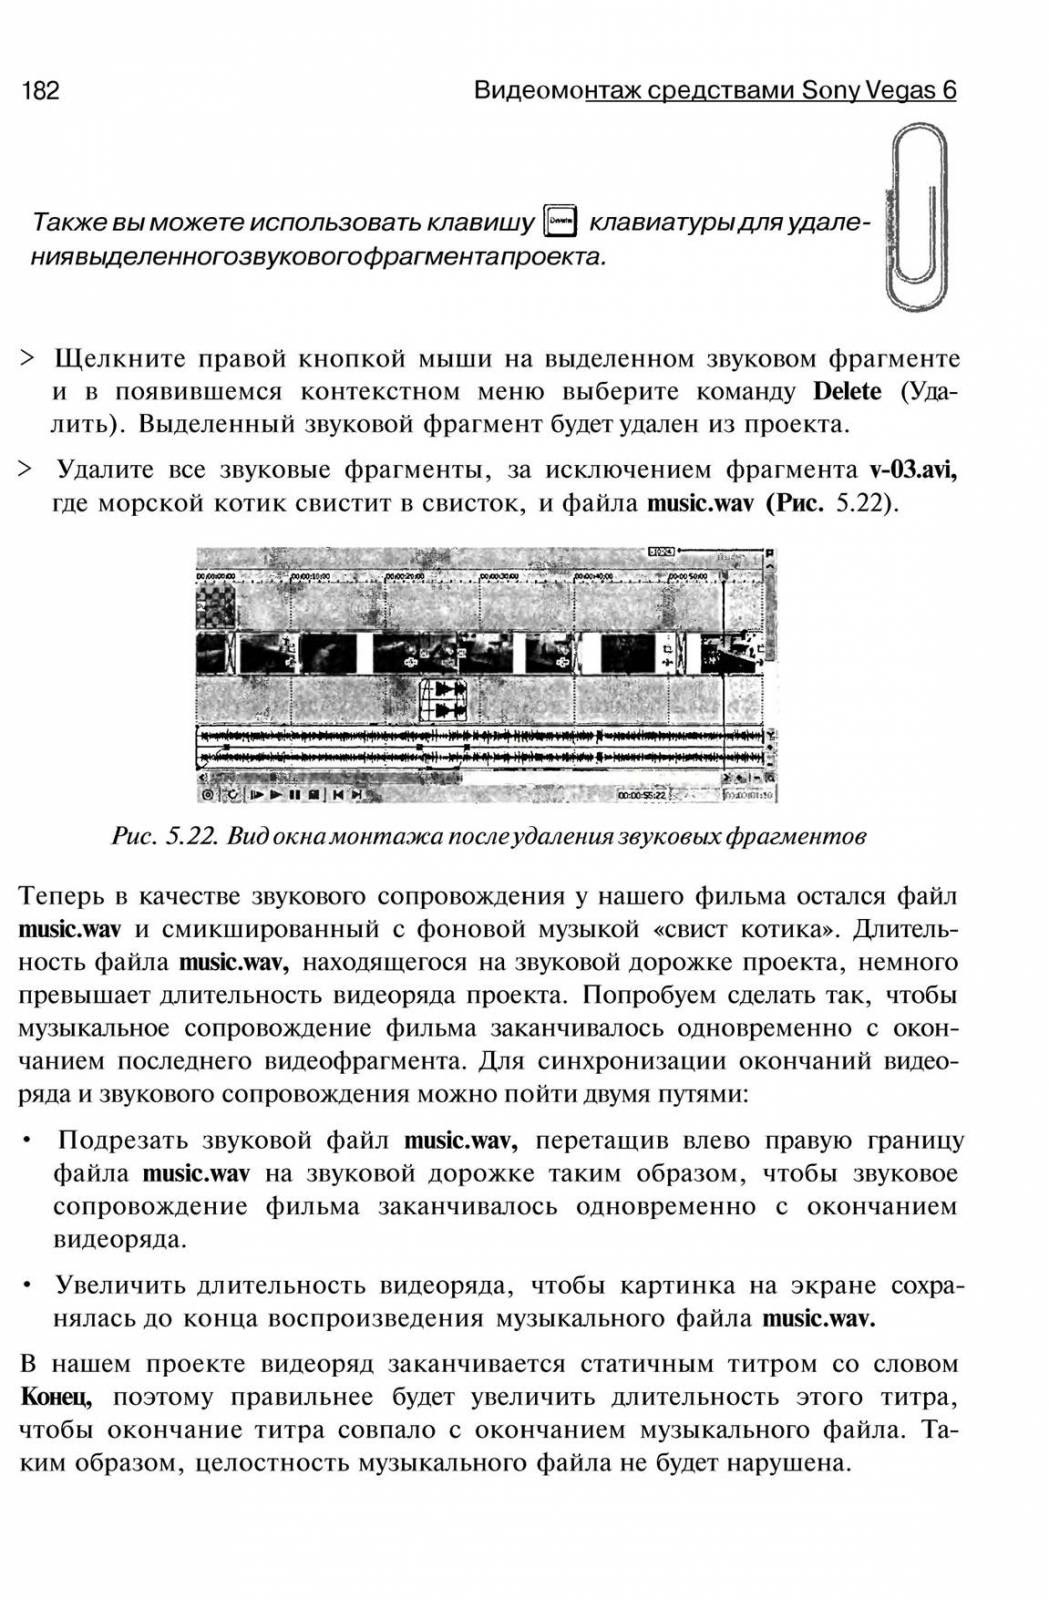 http://redaktori-uroki.3dn.ru/_ph/14/458920838.jpg